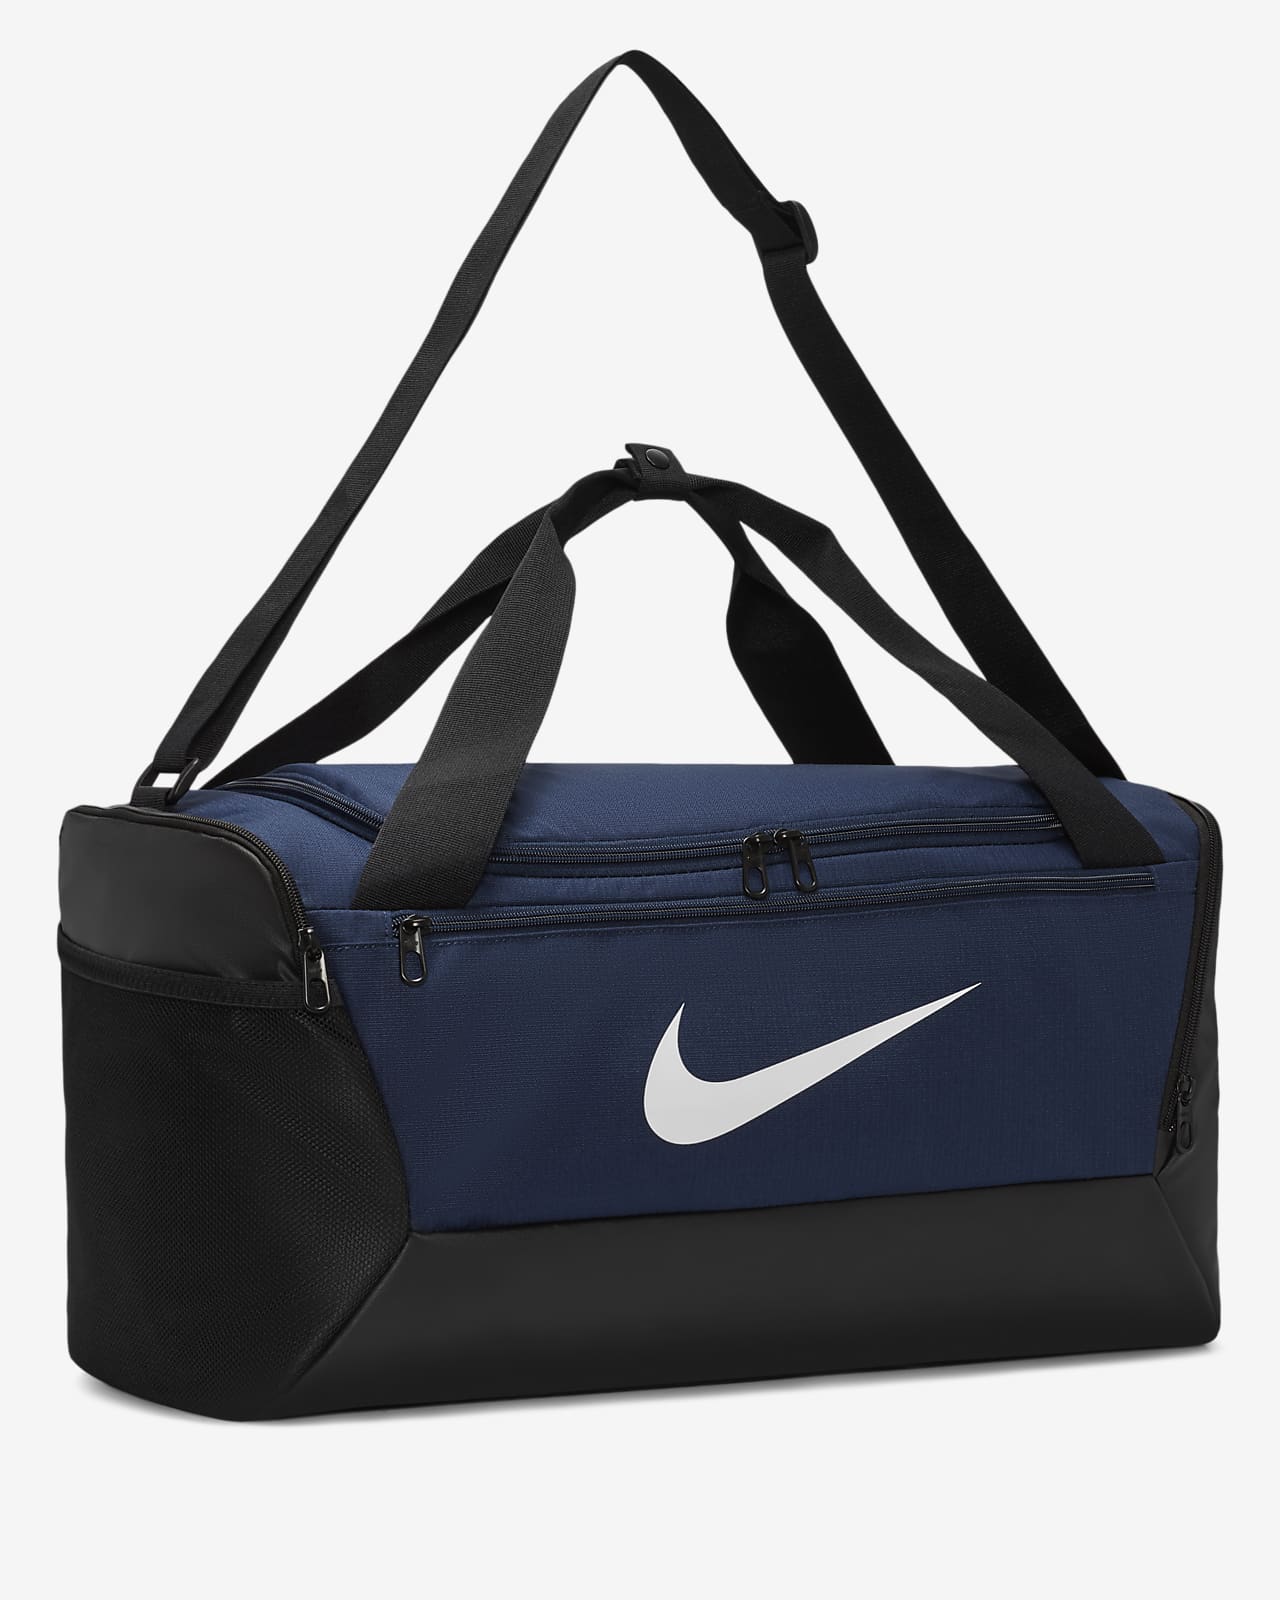 Nike Custom Duffle Bags - Small